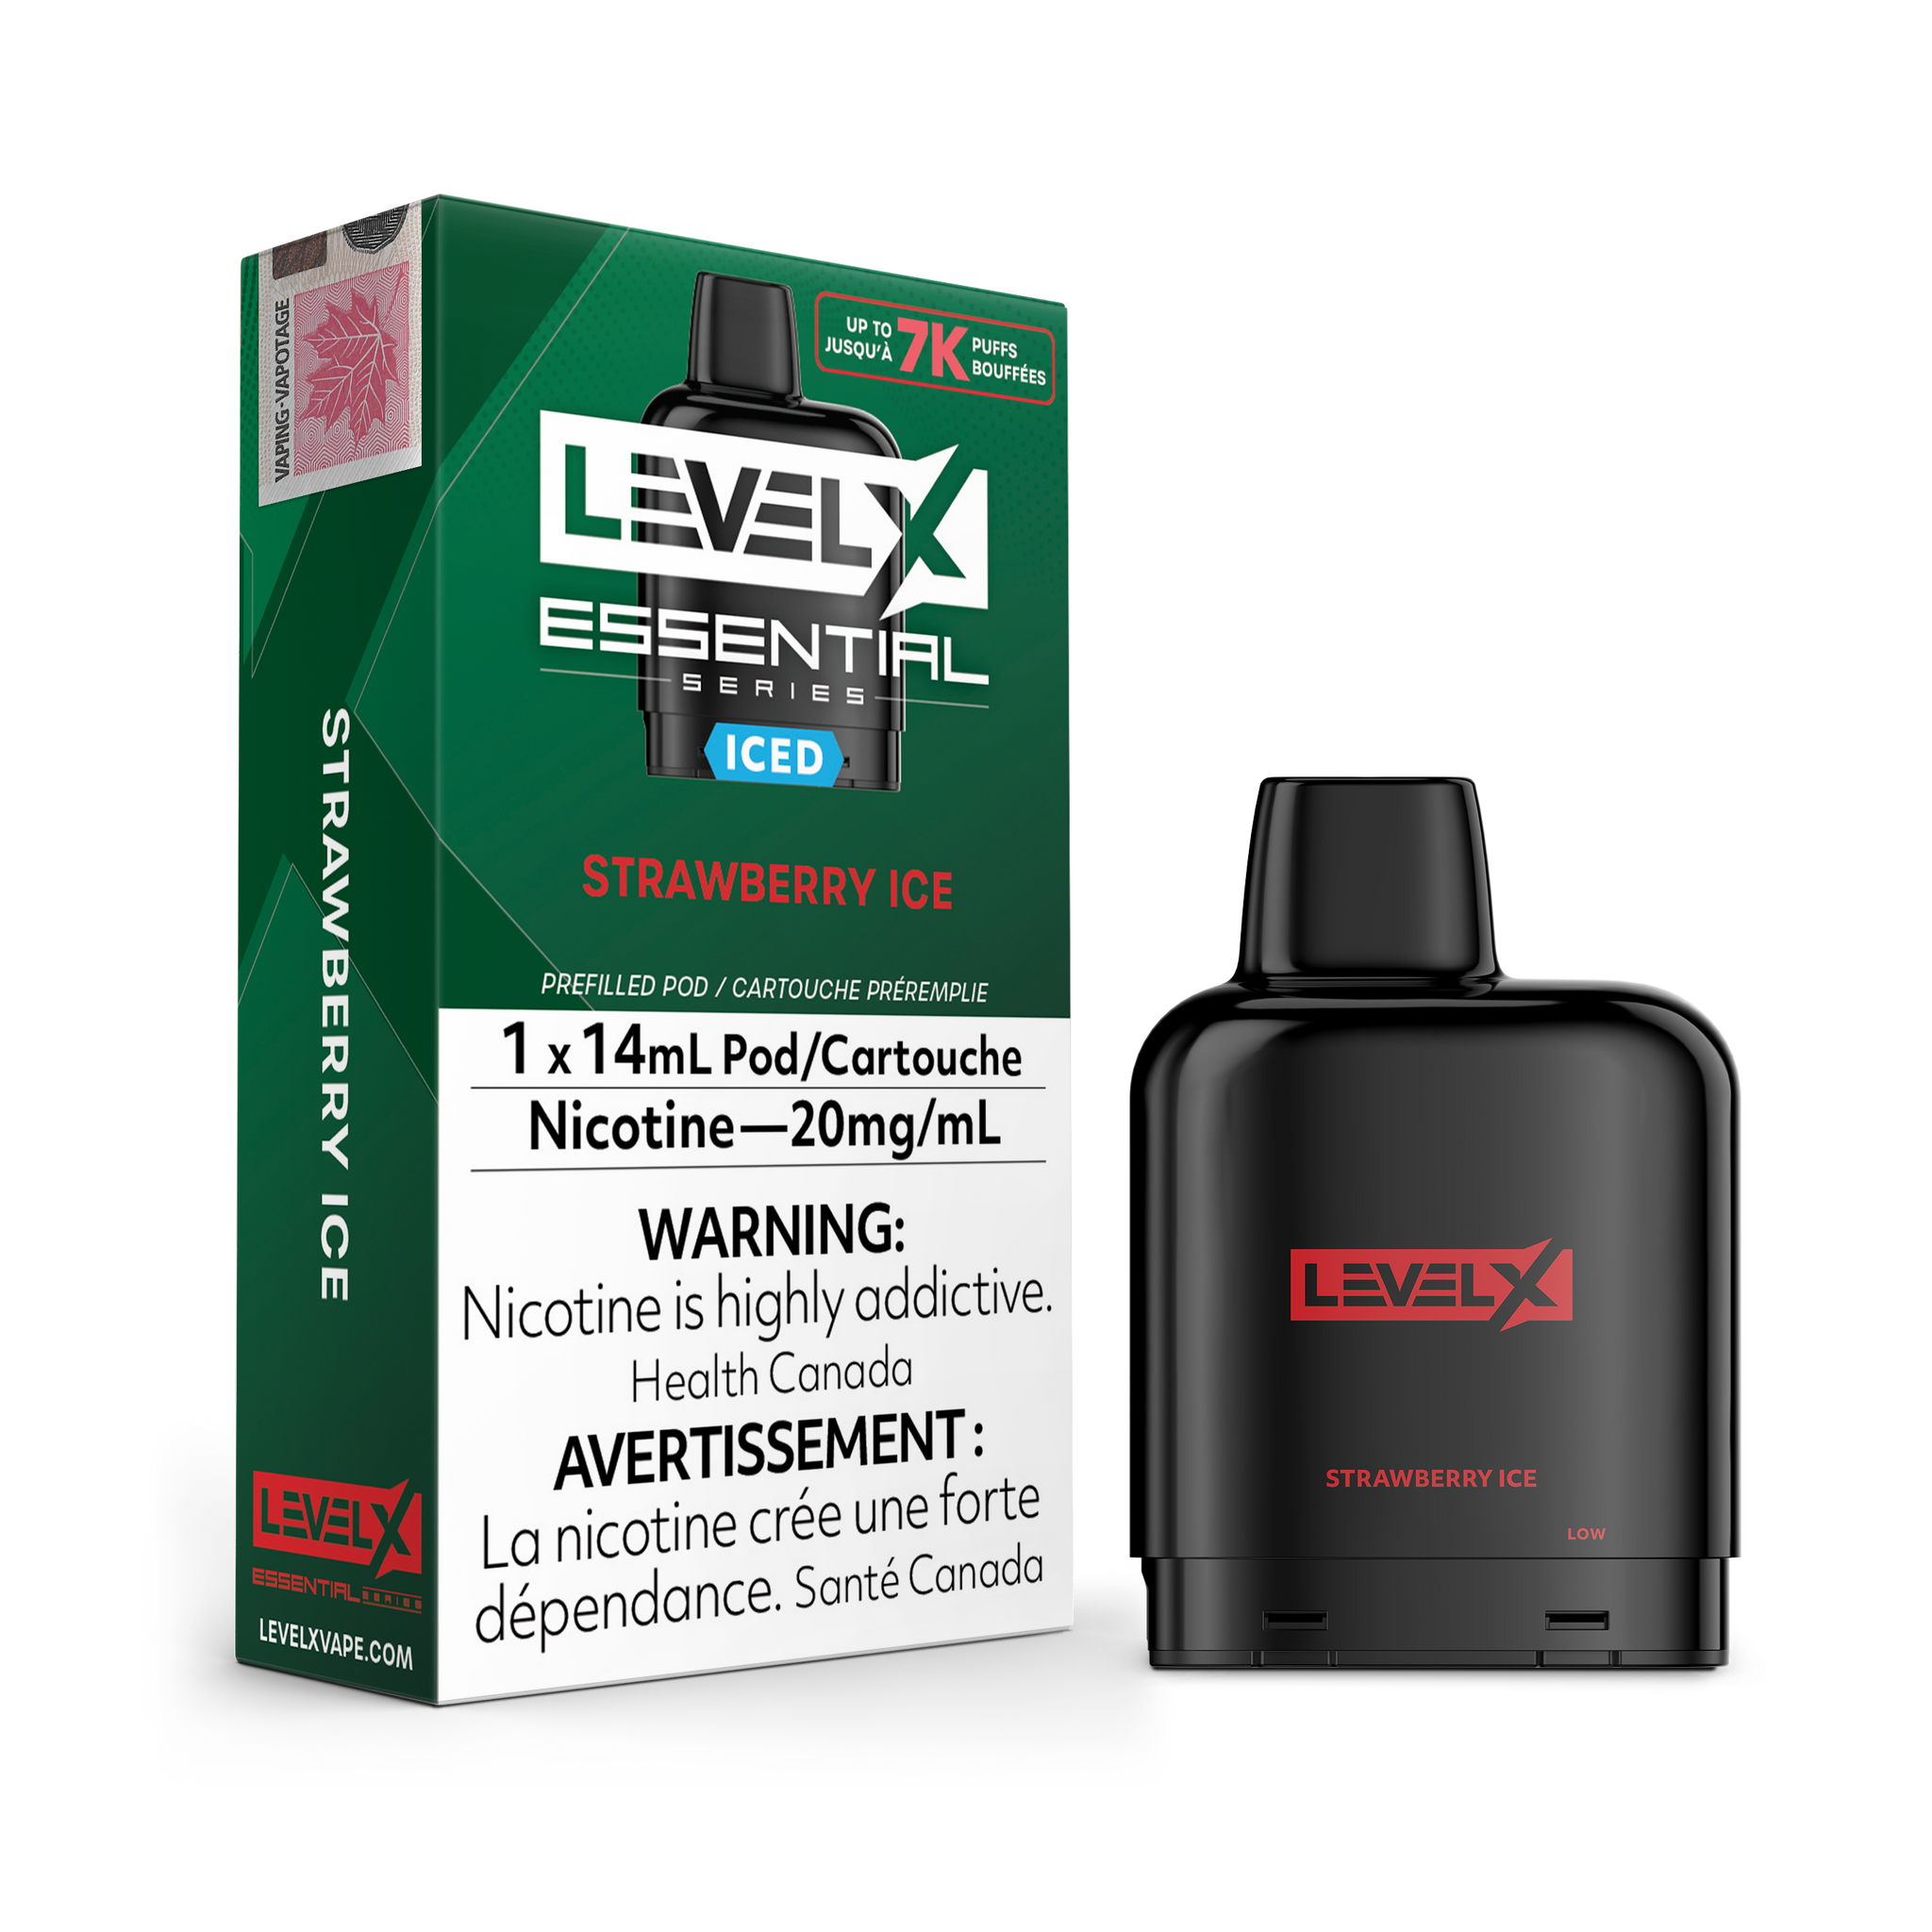 Level X Essential Series